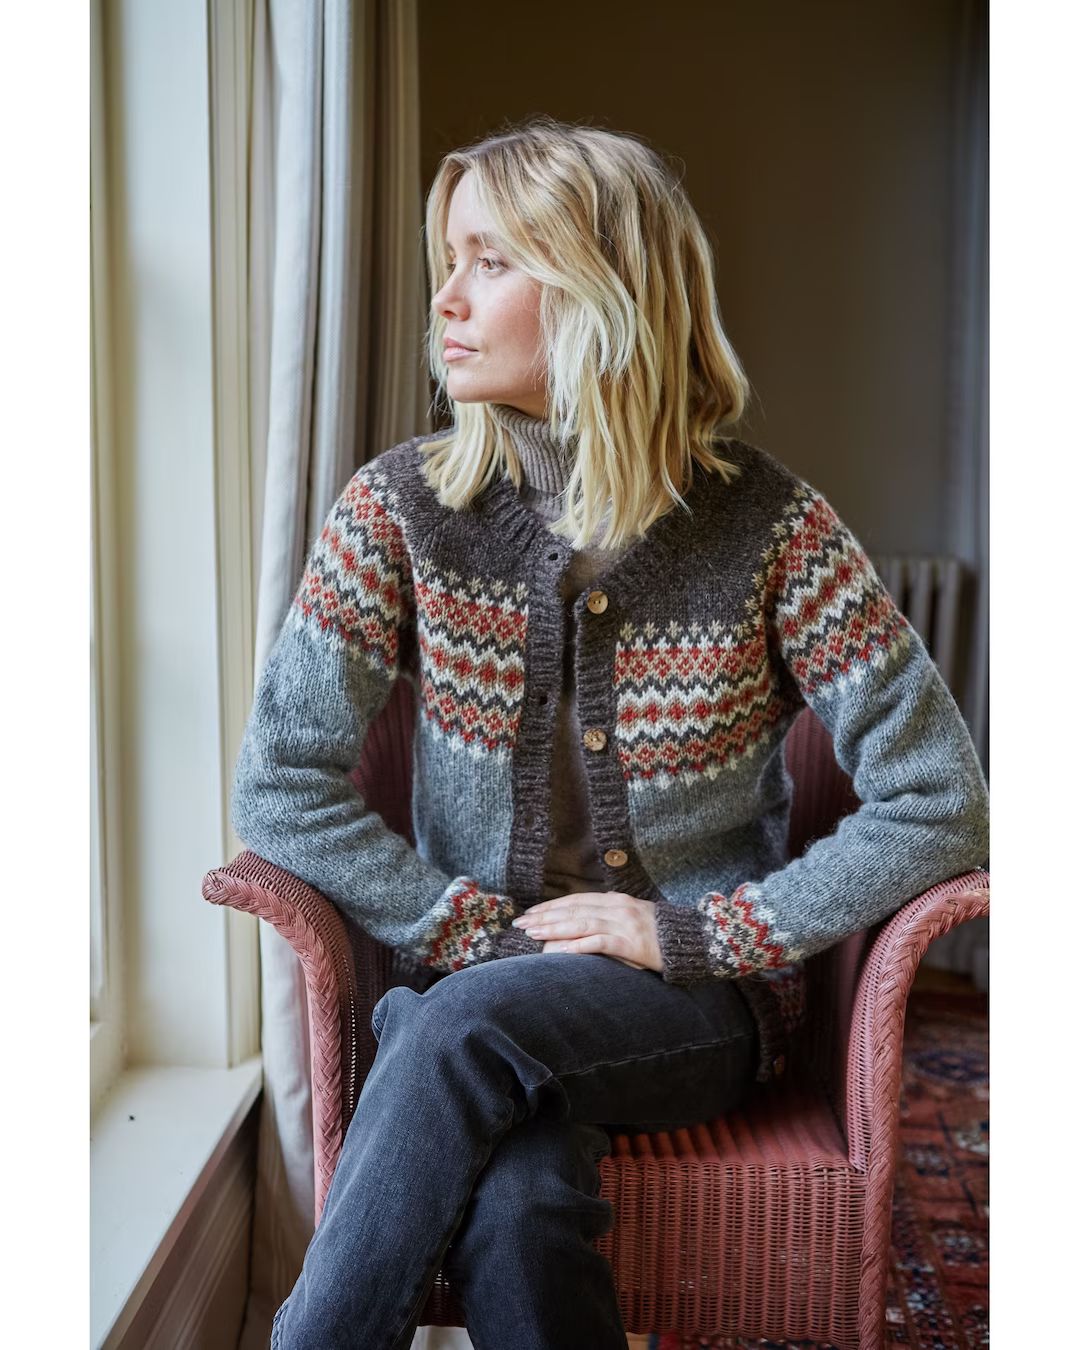 Women's Handknitted Cardigan 100% Wool Ethical - Etsy UK | Etsy (UK)